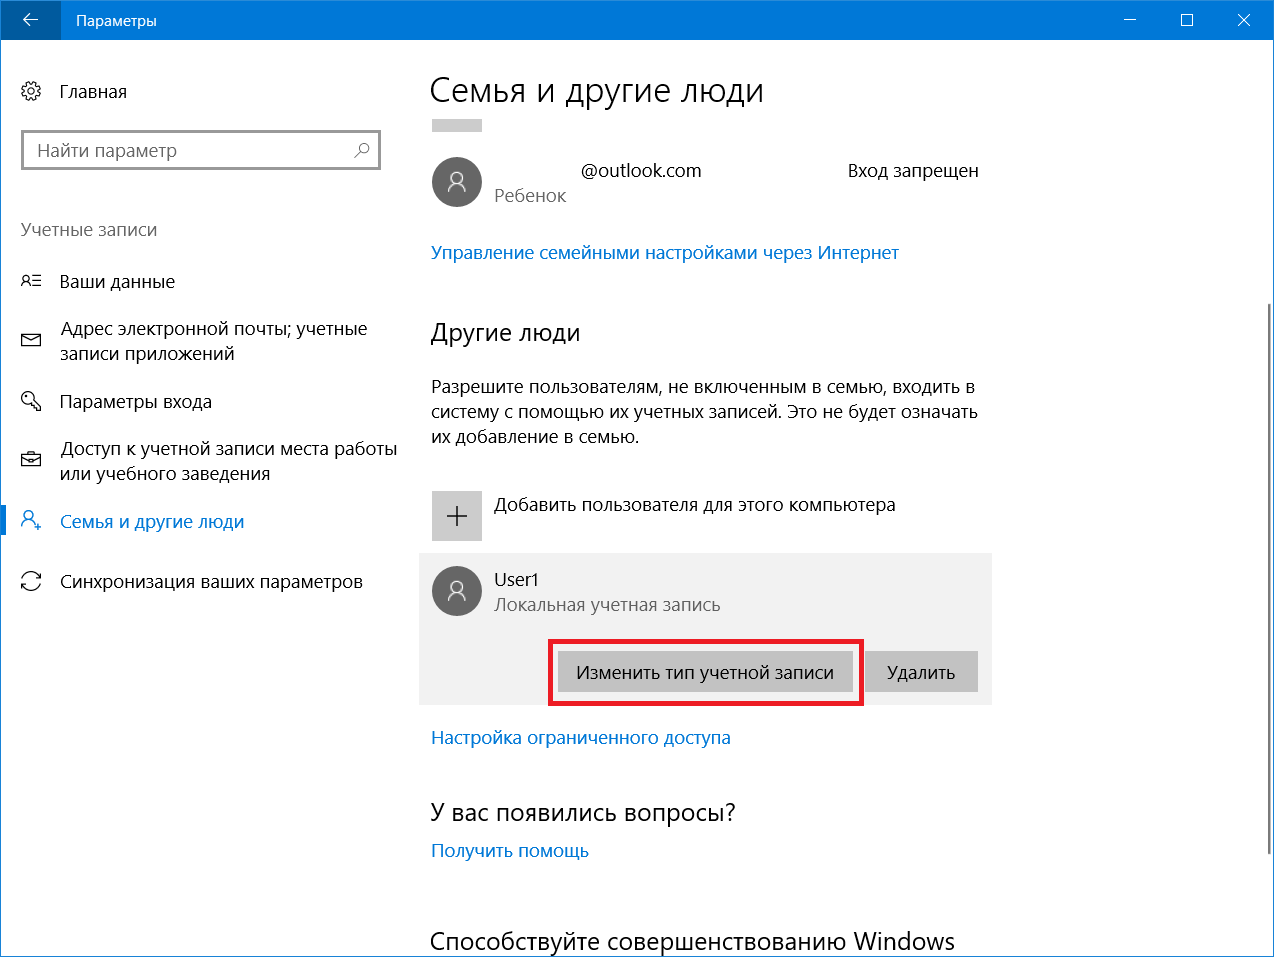 Как сменить имя пользователя в windows 10 для любой учетной записи